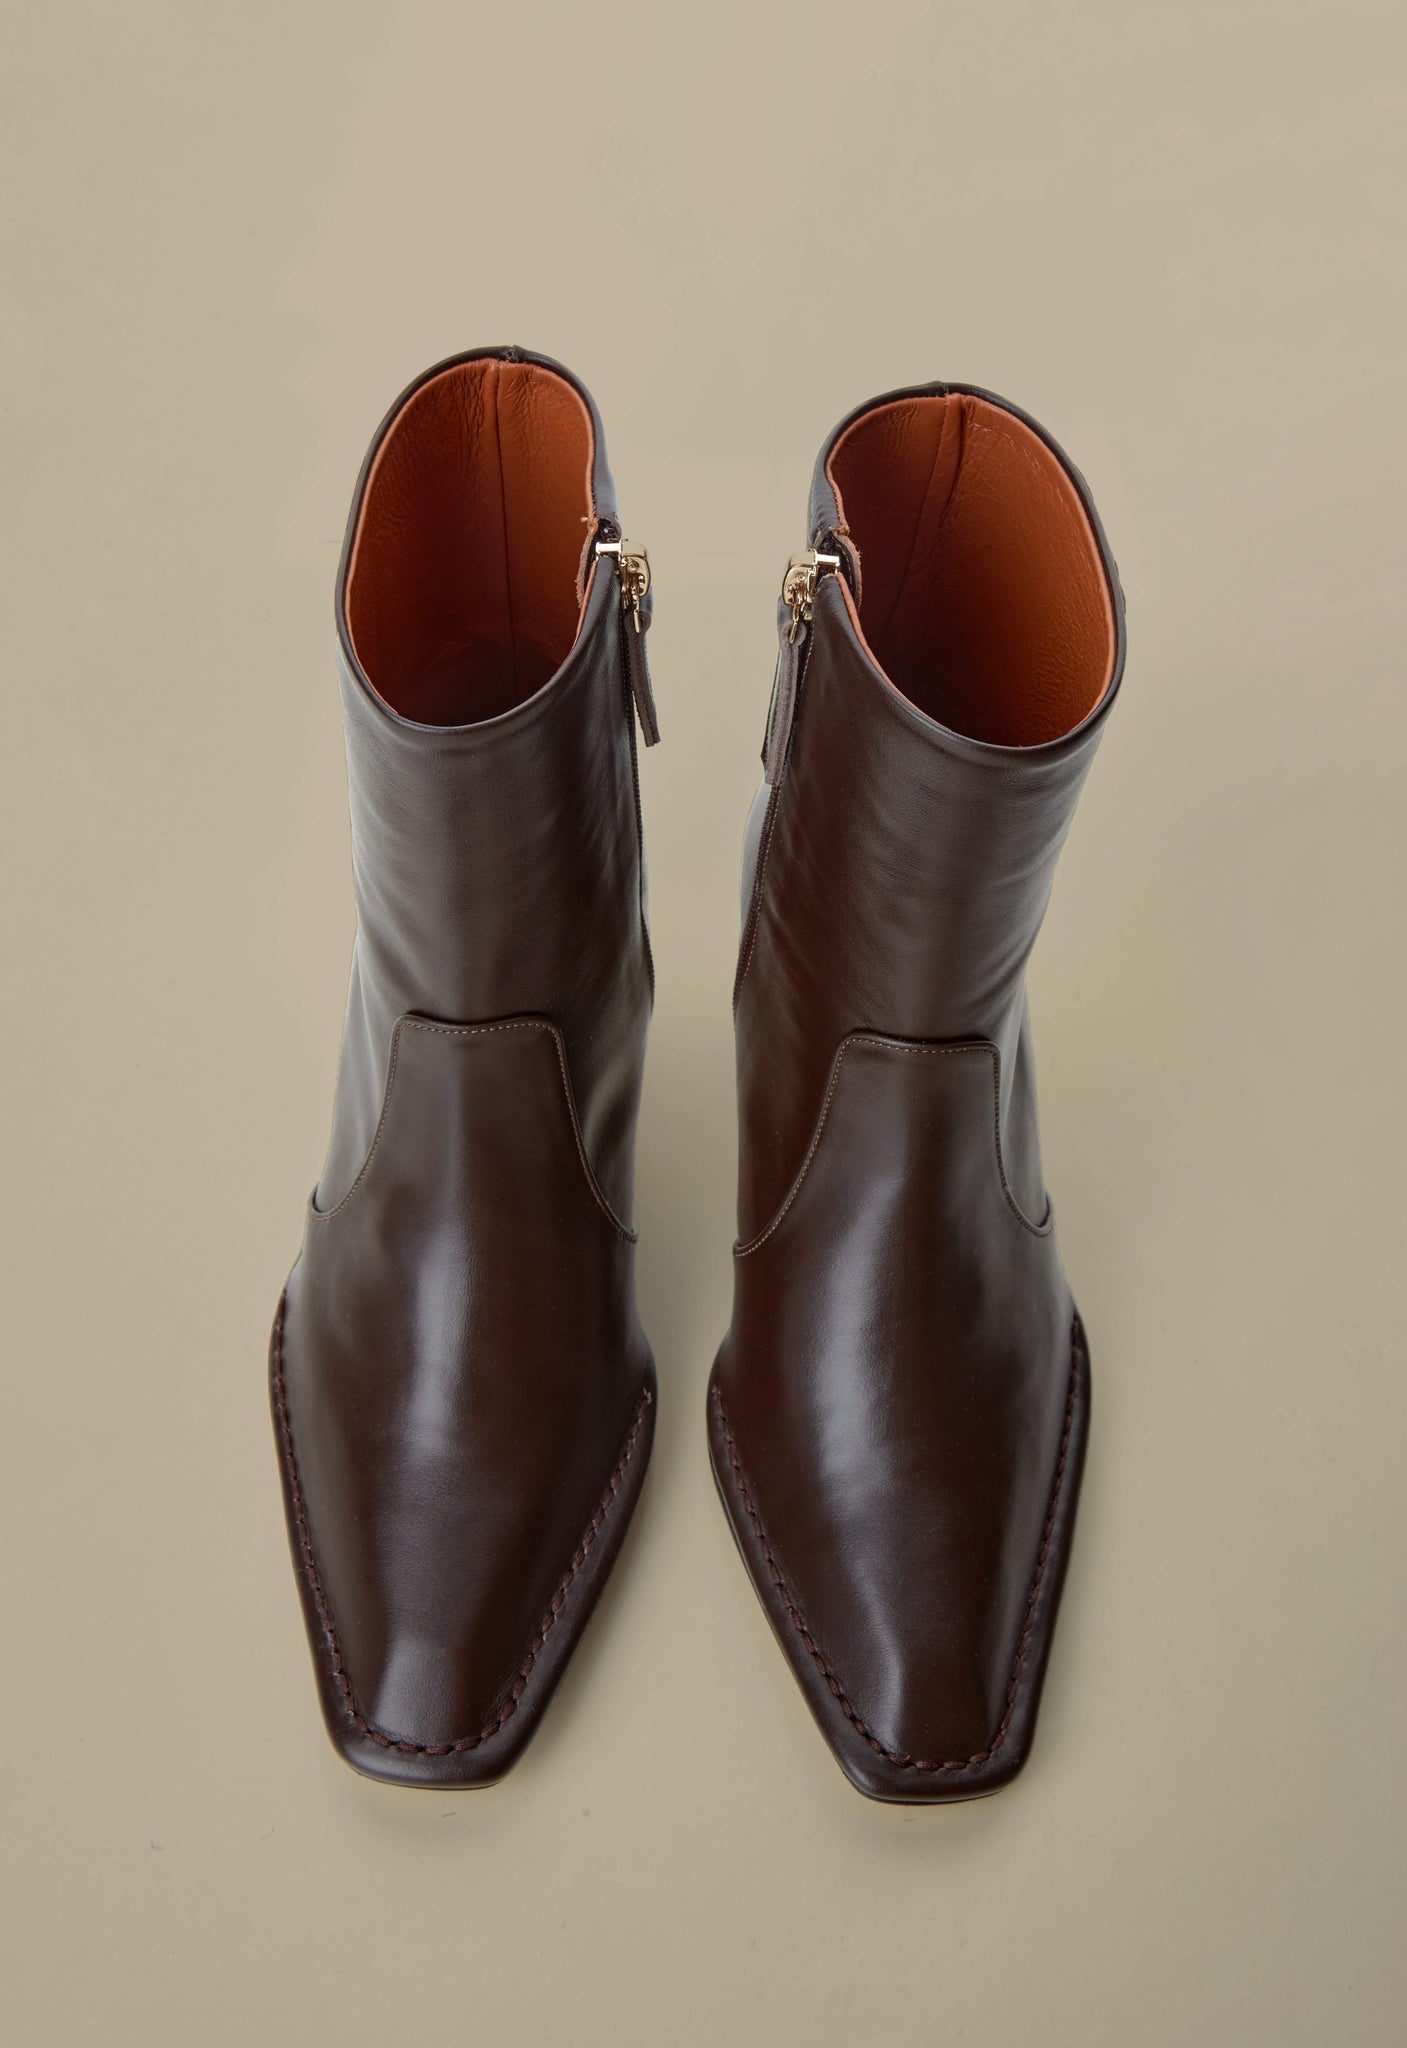 Calais Ankle Boots-Chocolate - Je la connais